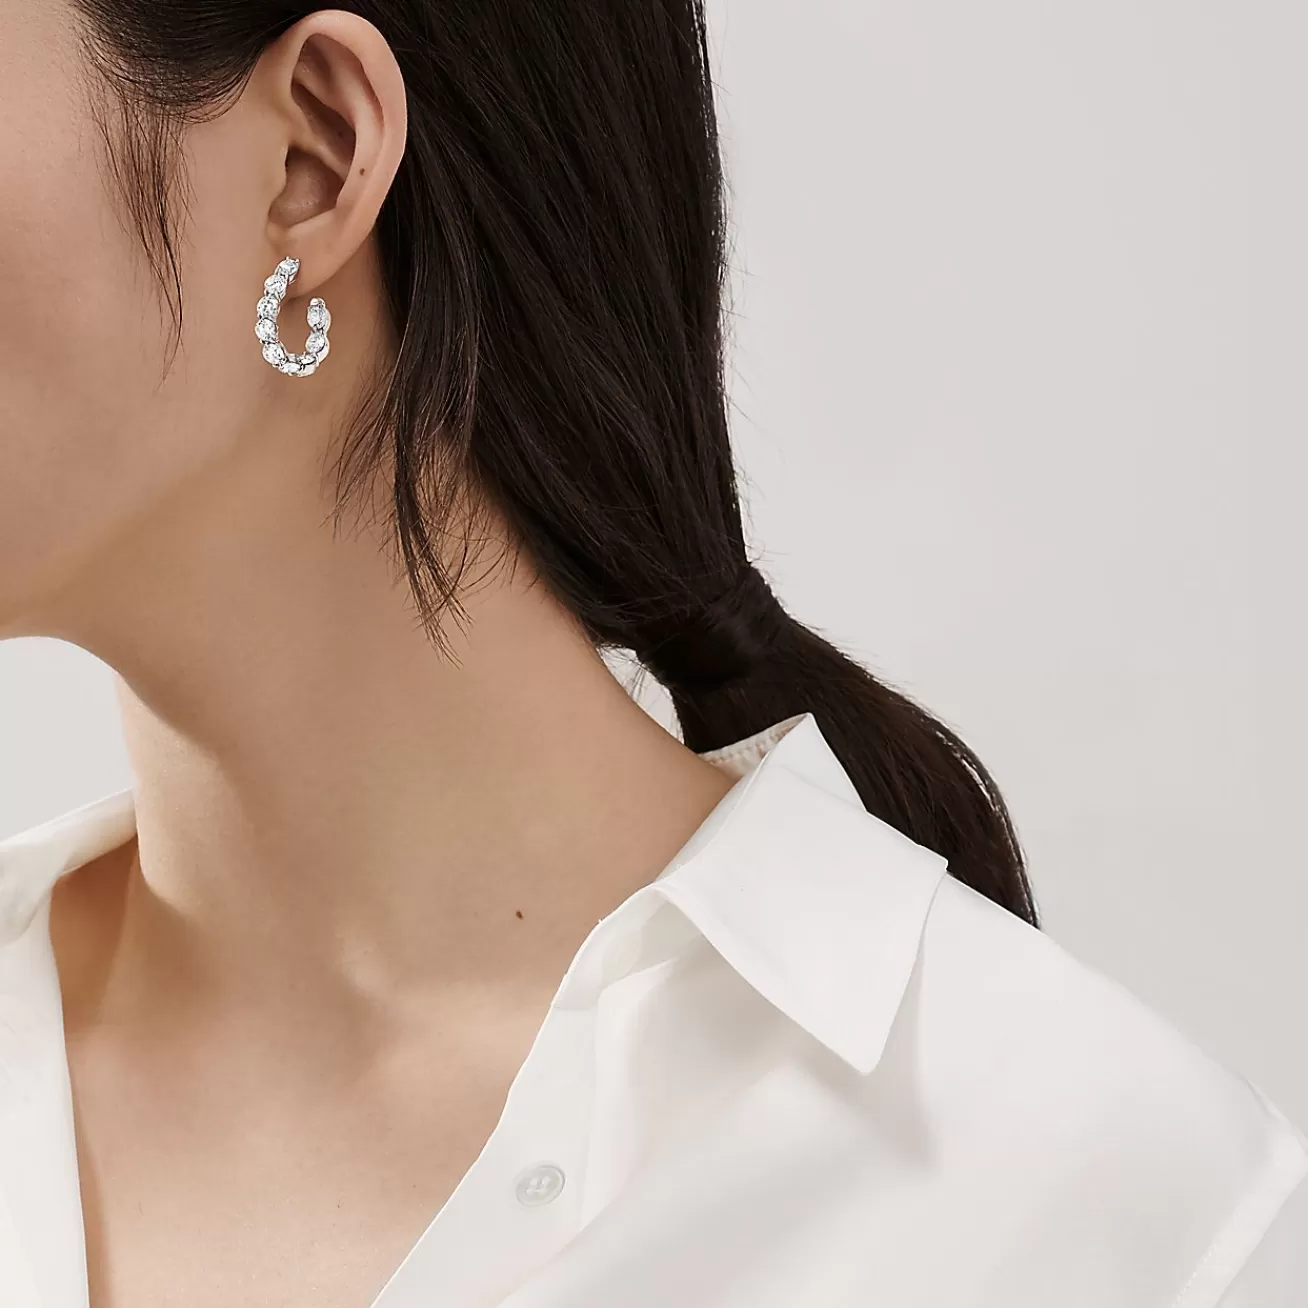 Tiffany & Co. Inside-out hoop earrings in platinum with diamonds. | ^ Earrings | Hoop Earrings